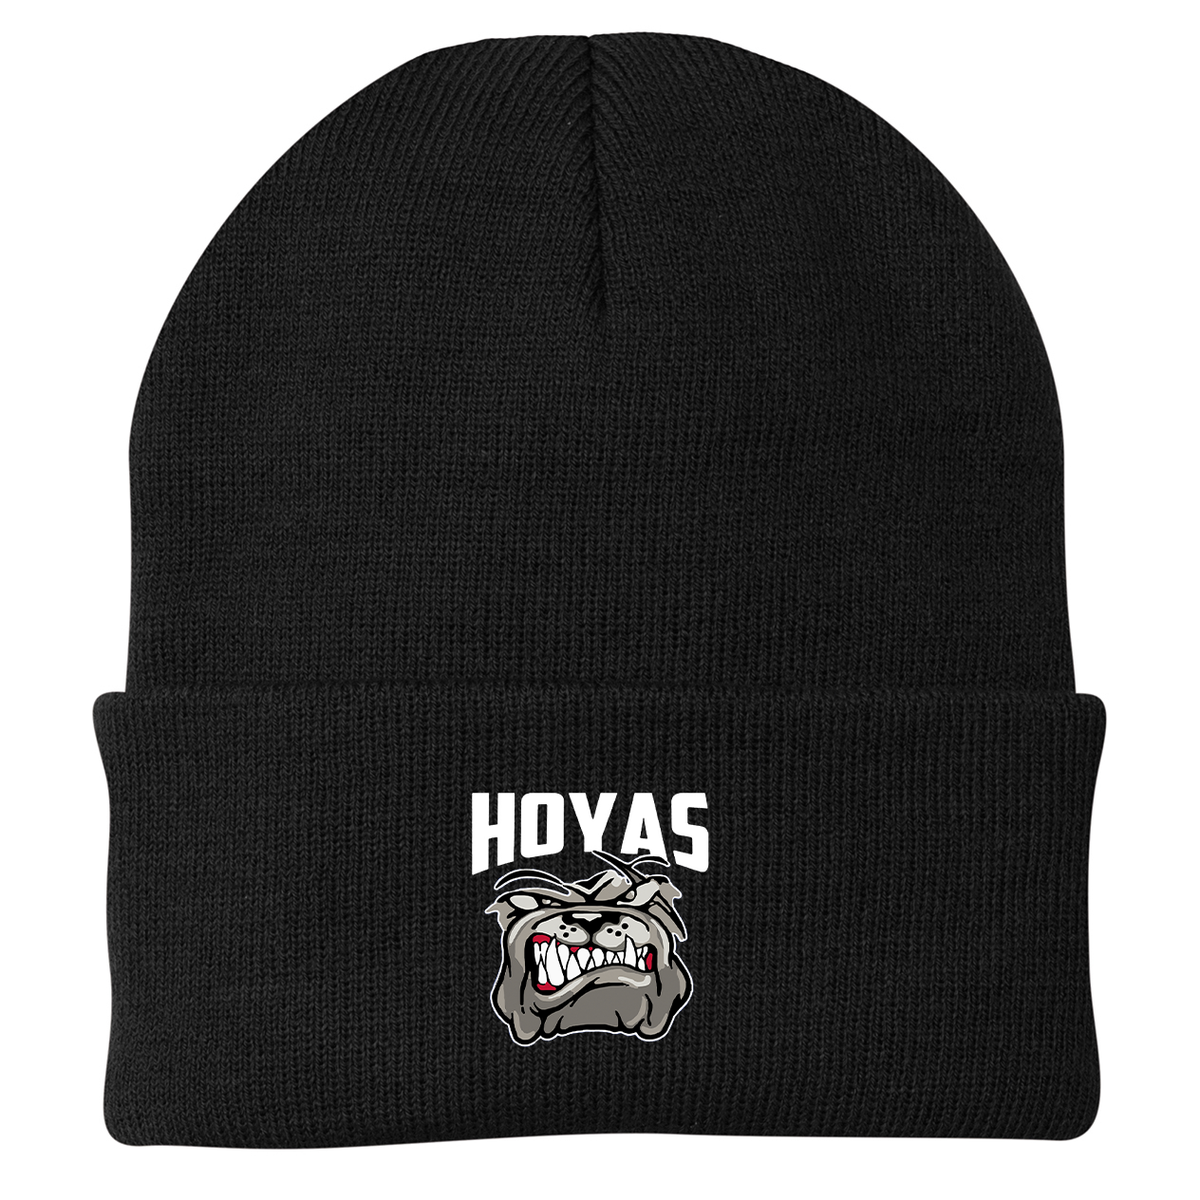 Hoya Lacrosse Knit Beanie